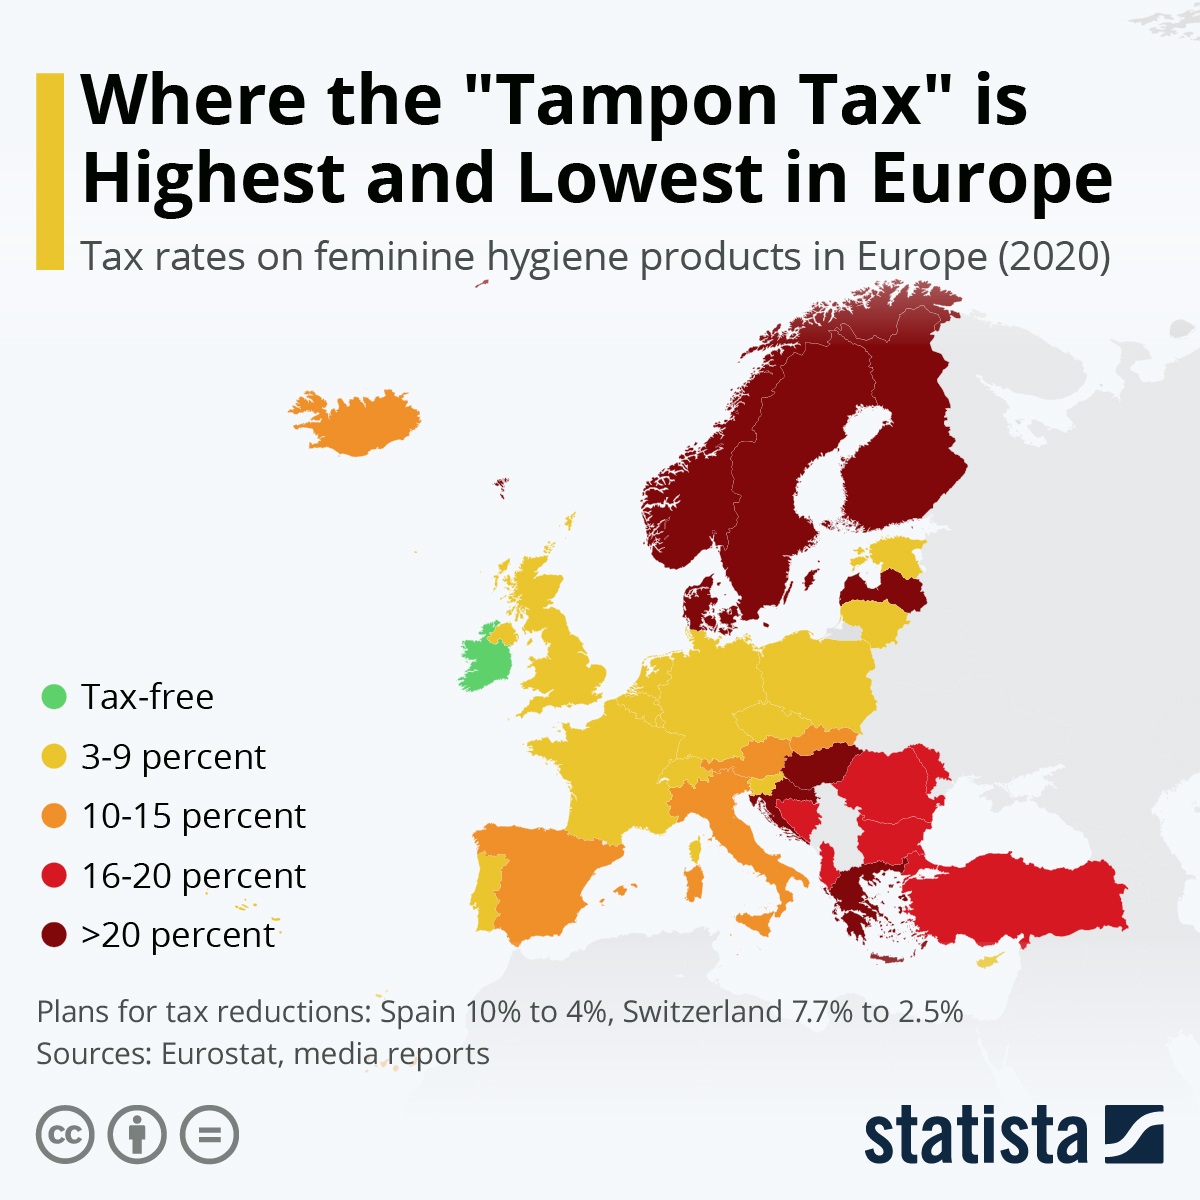 Jak vysoká je takzvaná tamponová daň v různých zemích Evropy?